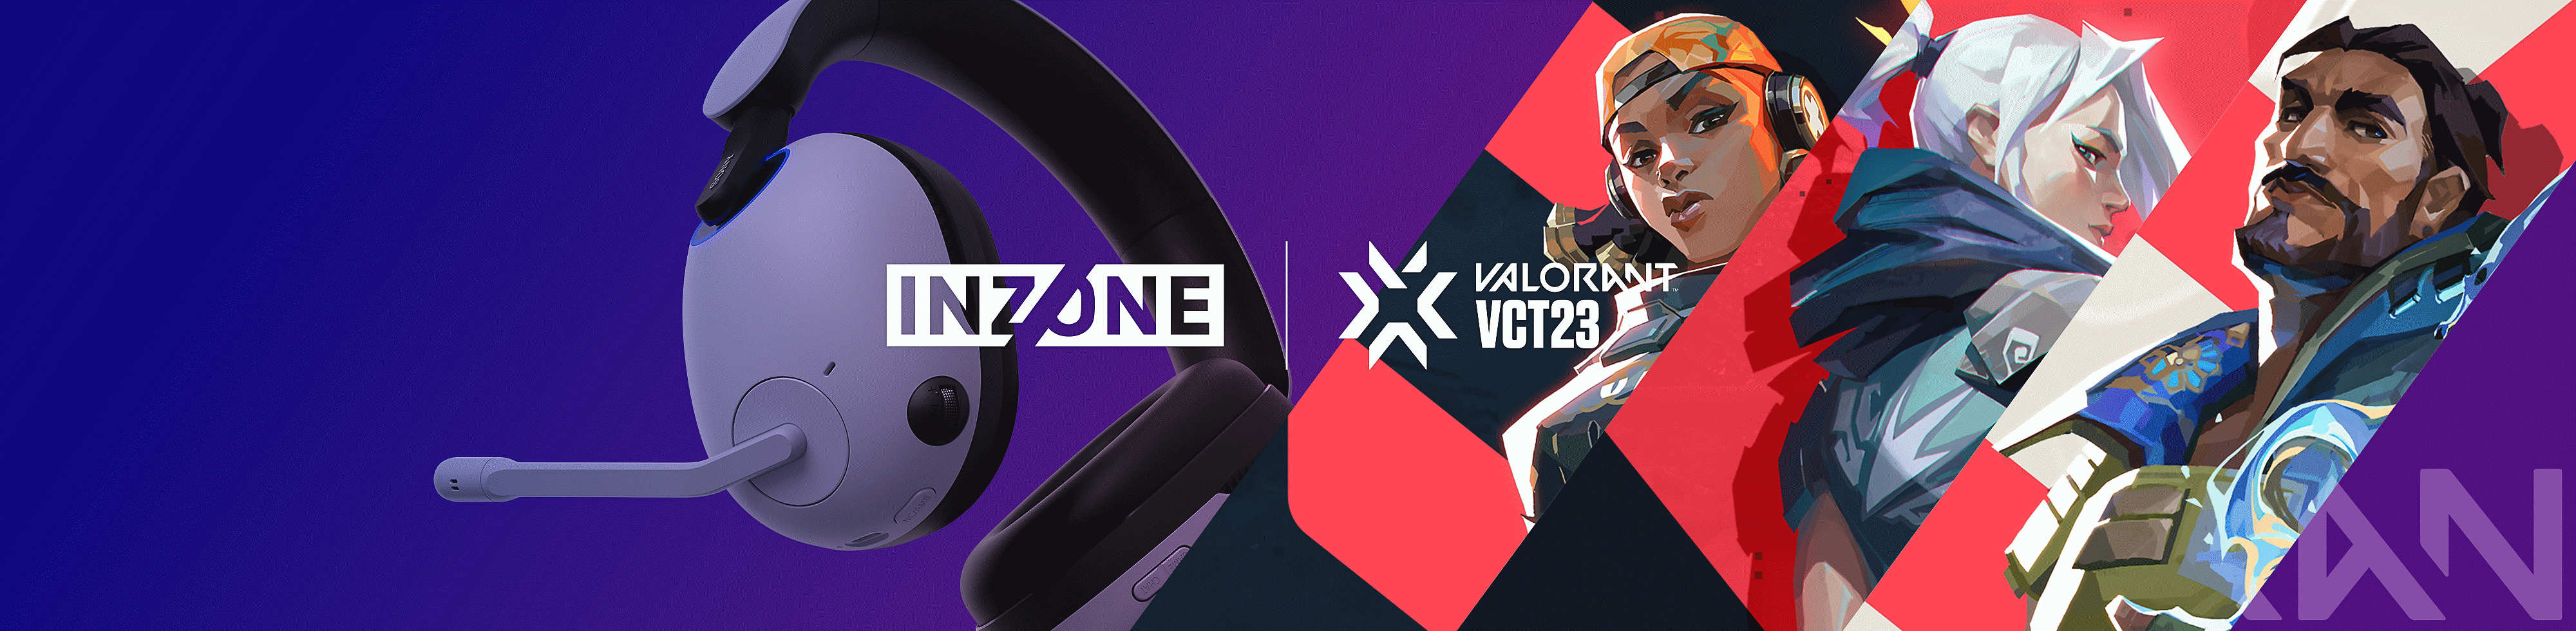 ภาพชุดหูฟังสำหรับเล่นเกม INZONE H9 ของ Sony พร้อมตัวละคร VALORANT และโลโก้ INZONE และ VALORANT VCT23